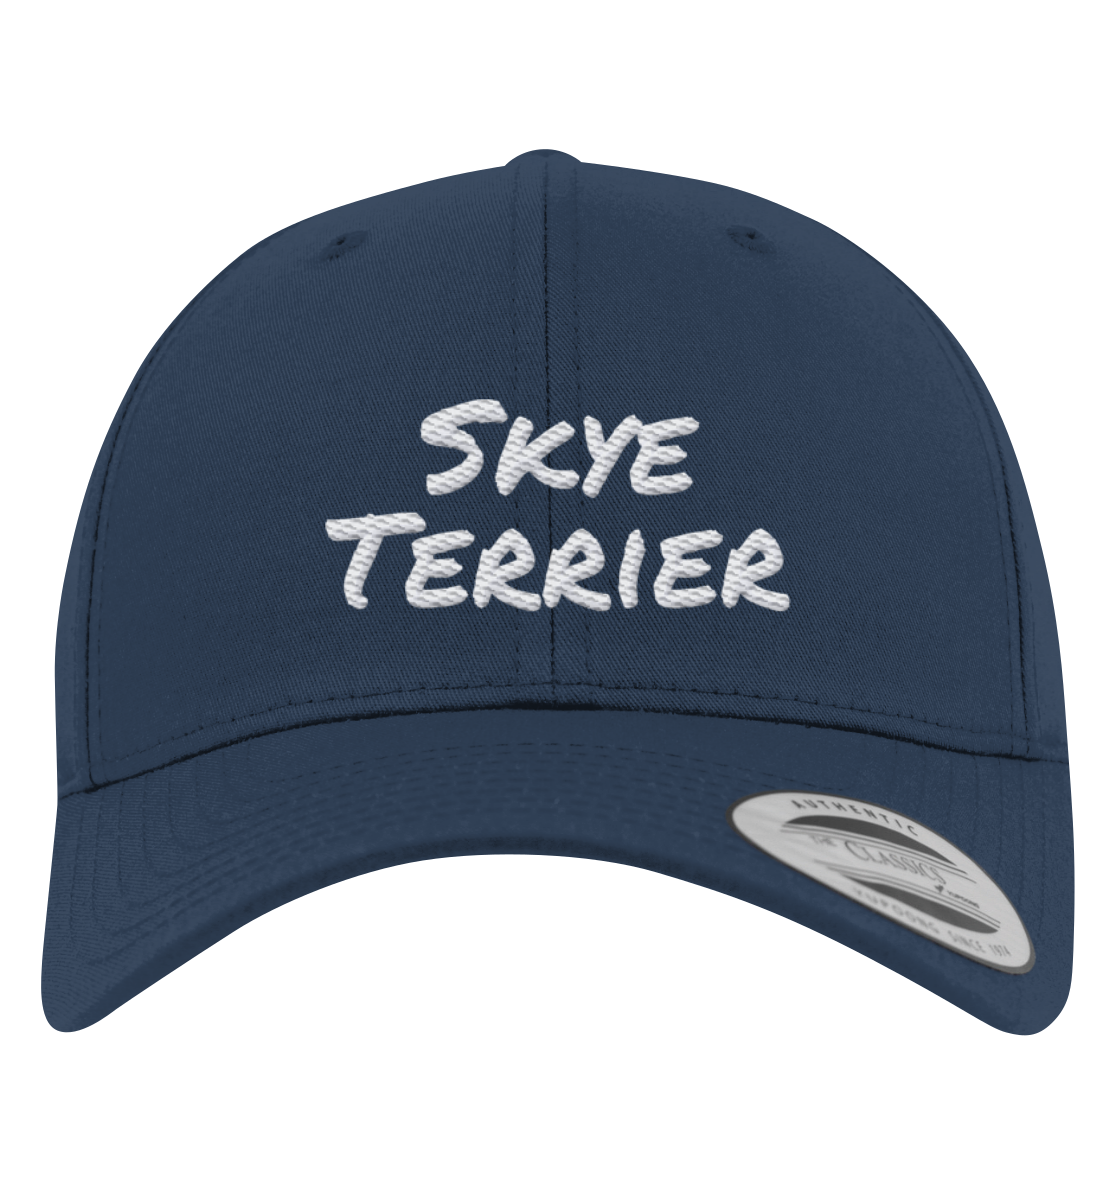 Skye Terrier - Premium Baseball Cap